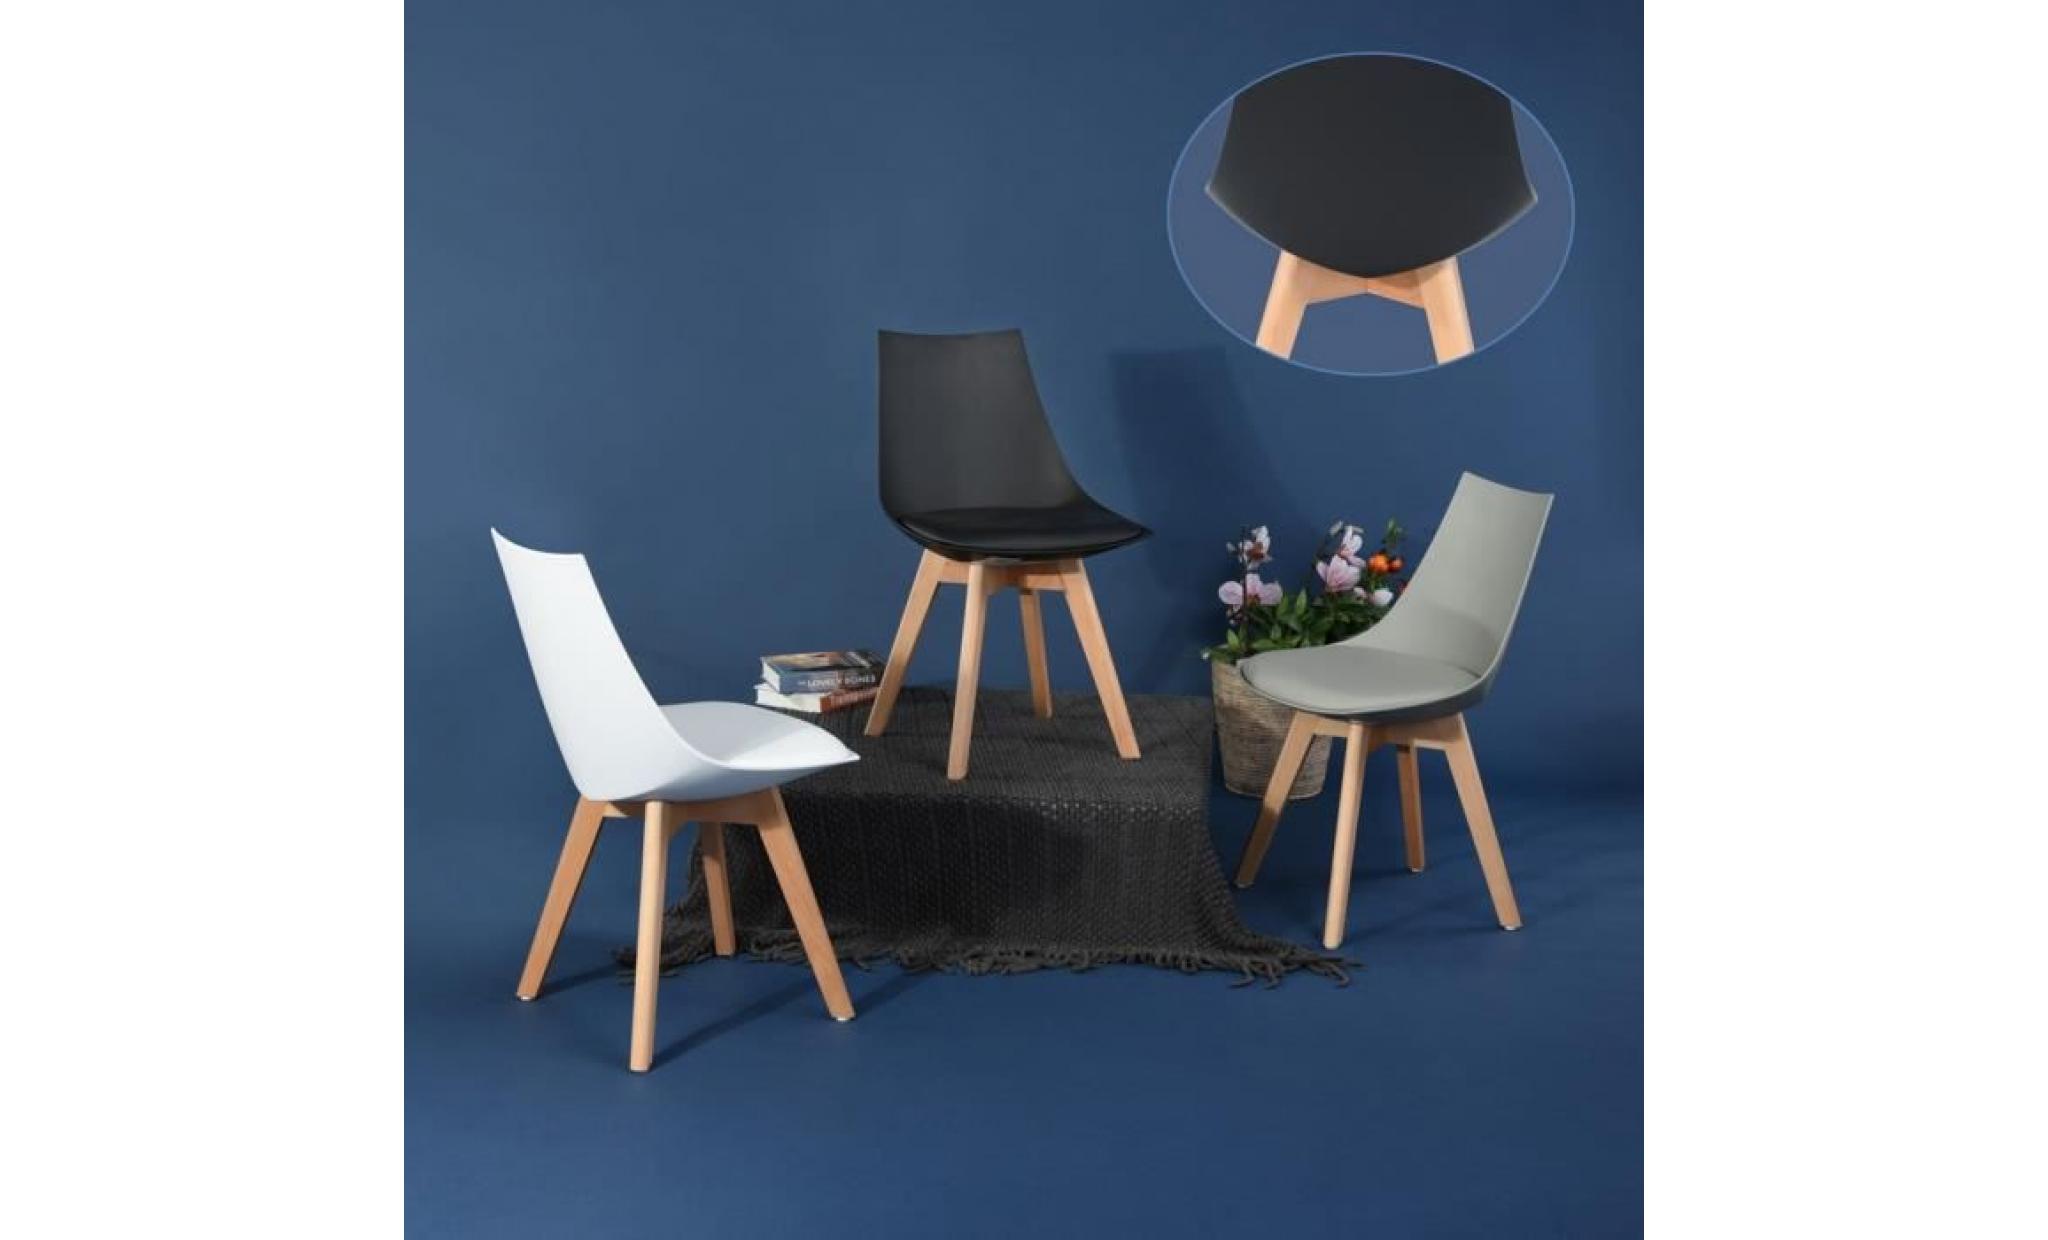 jkk lot de 8 chaises de salle à manger ensemble contemporain nordique scandinave gris +noir 50x48x82 cm pas cher